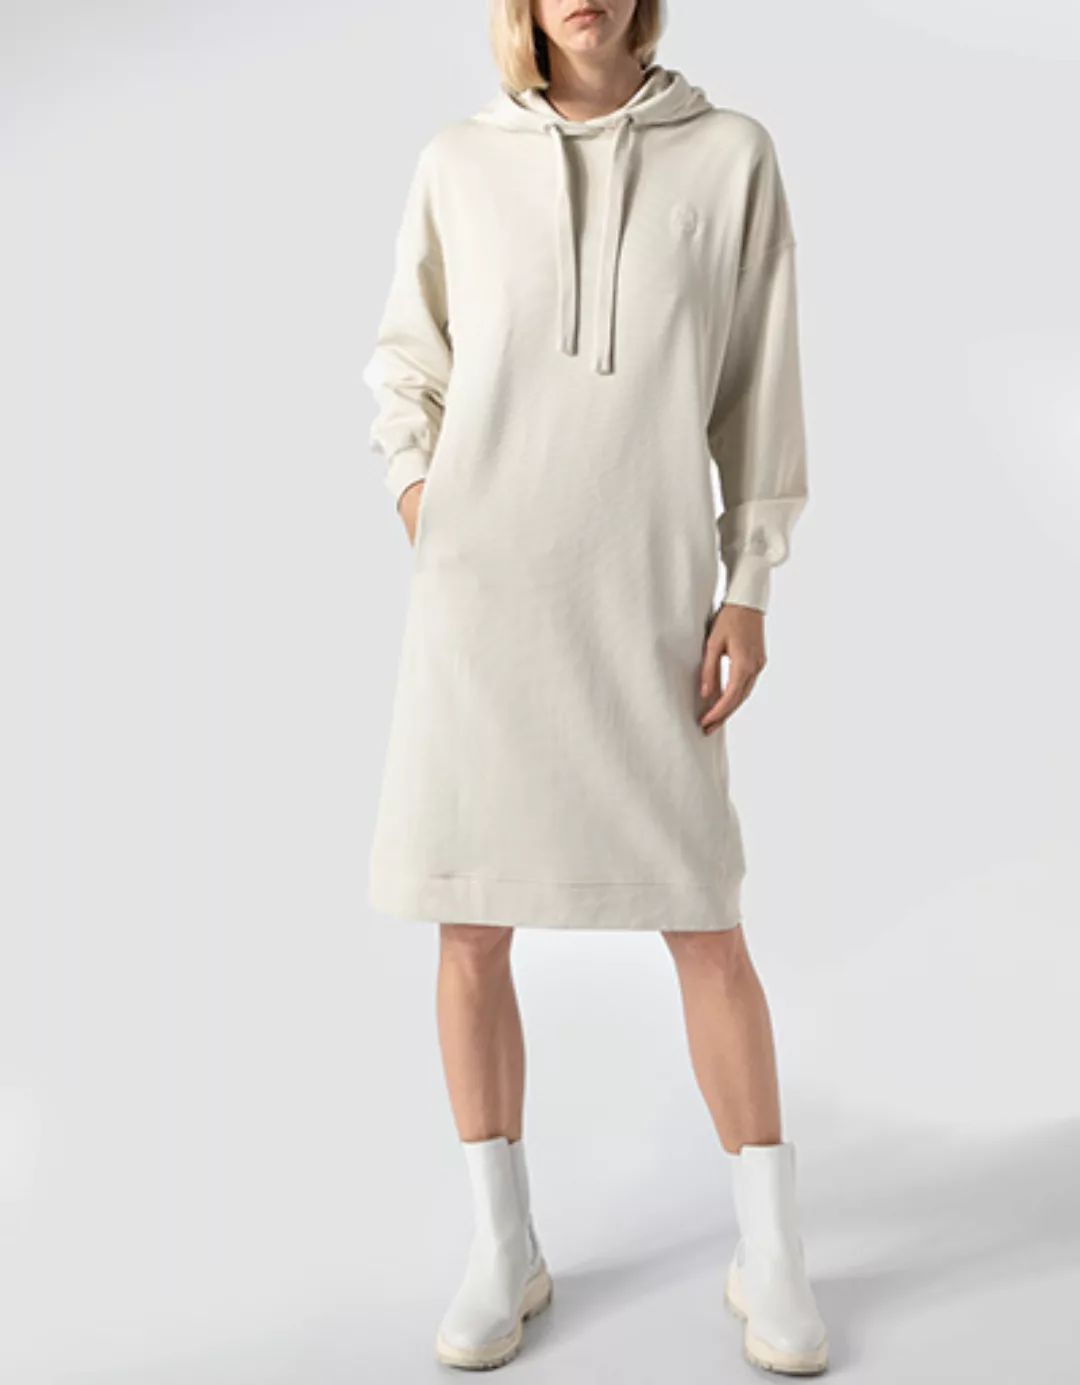 Marc O'Polo Damen Kleid M08 4125 59061/159 günstig online kaufen